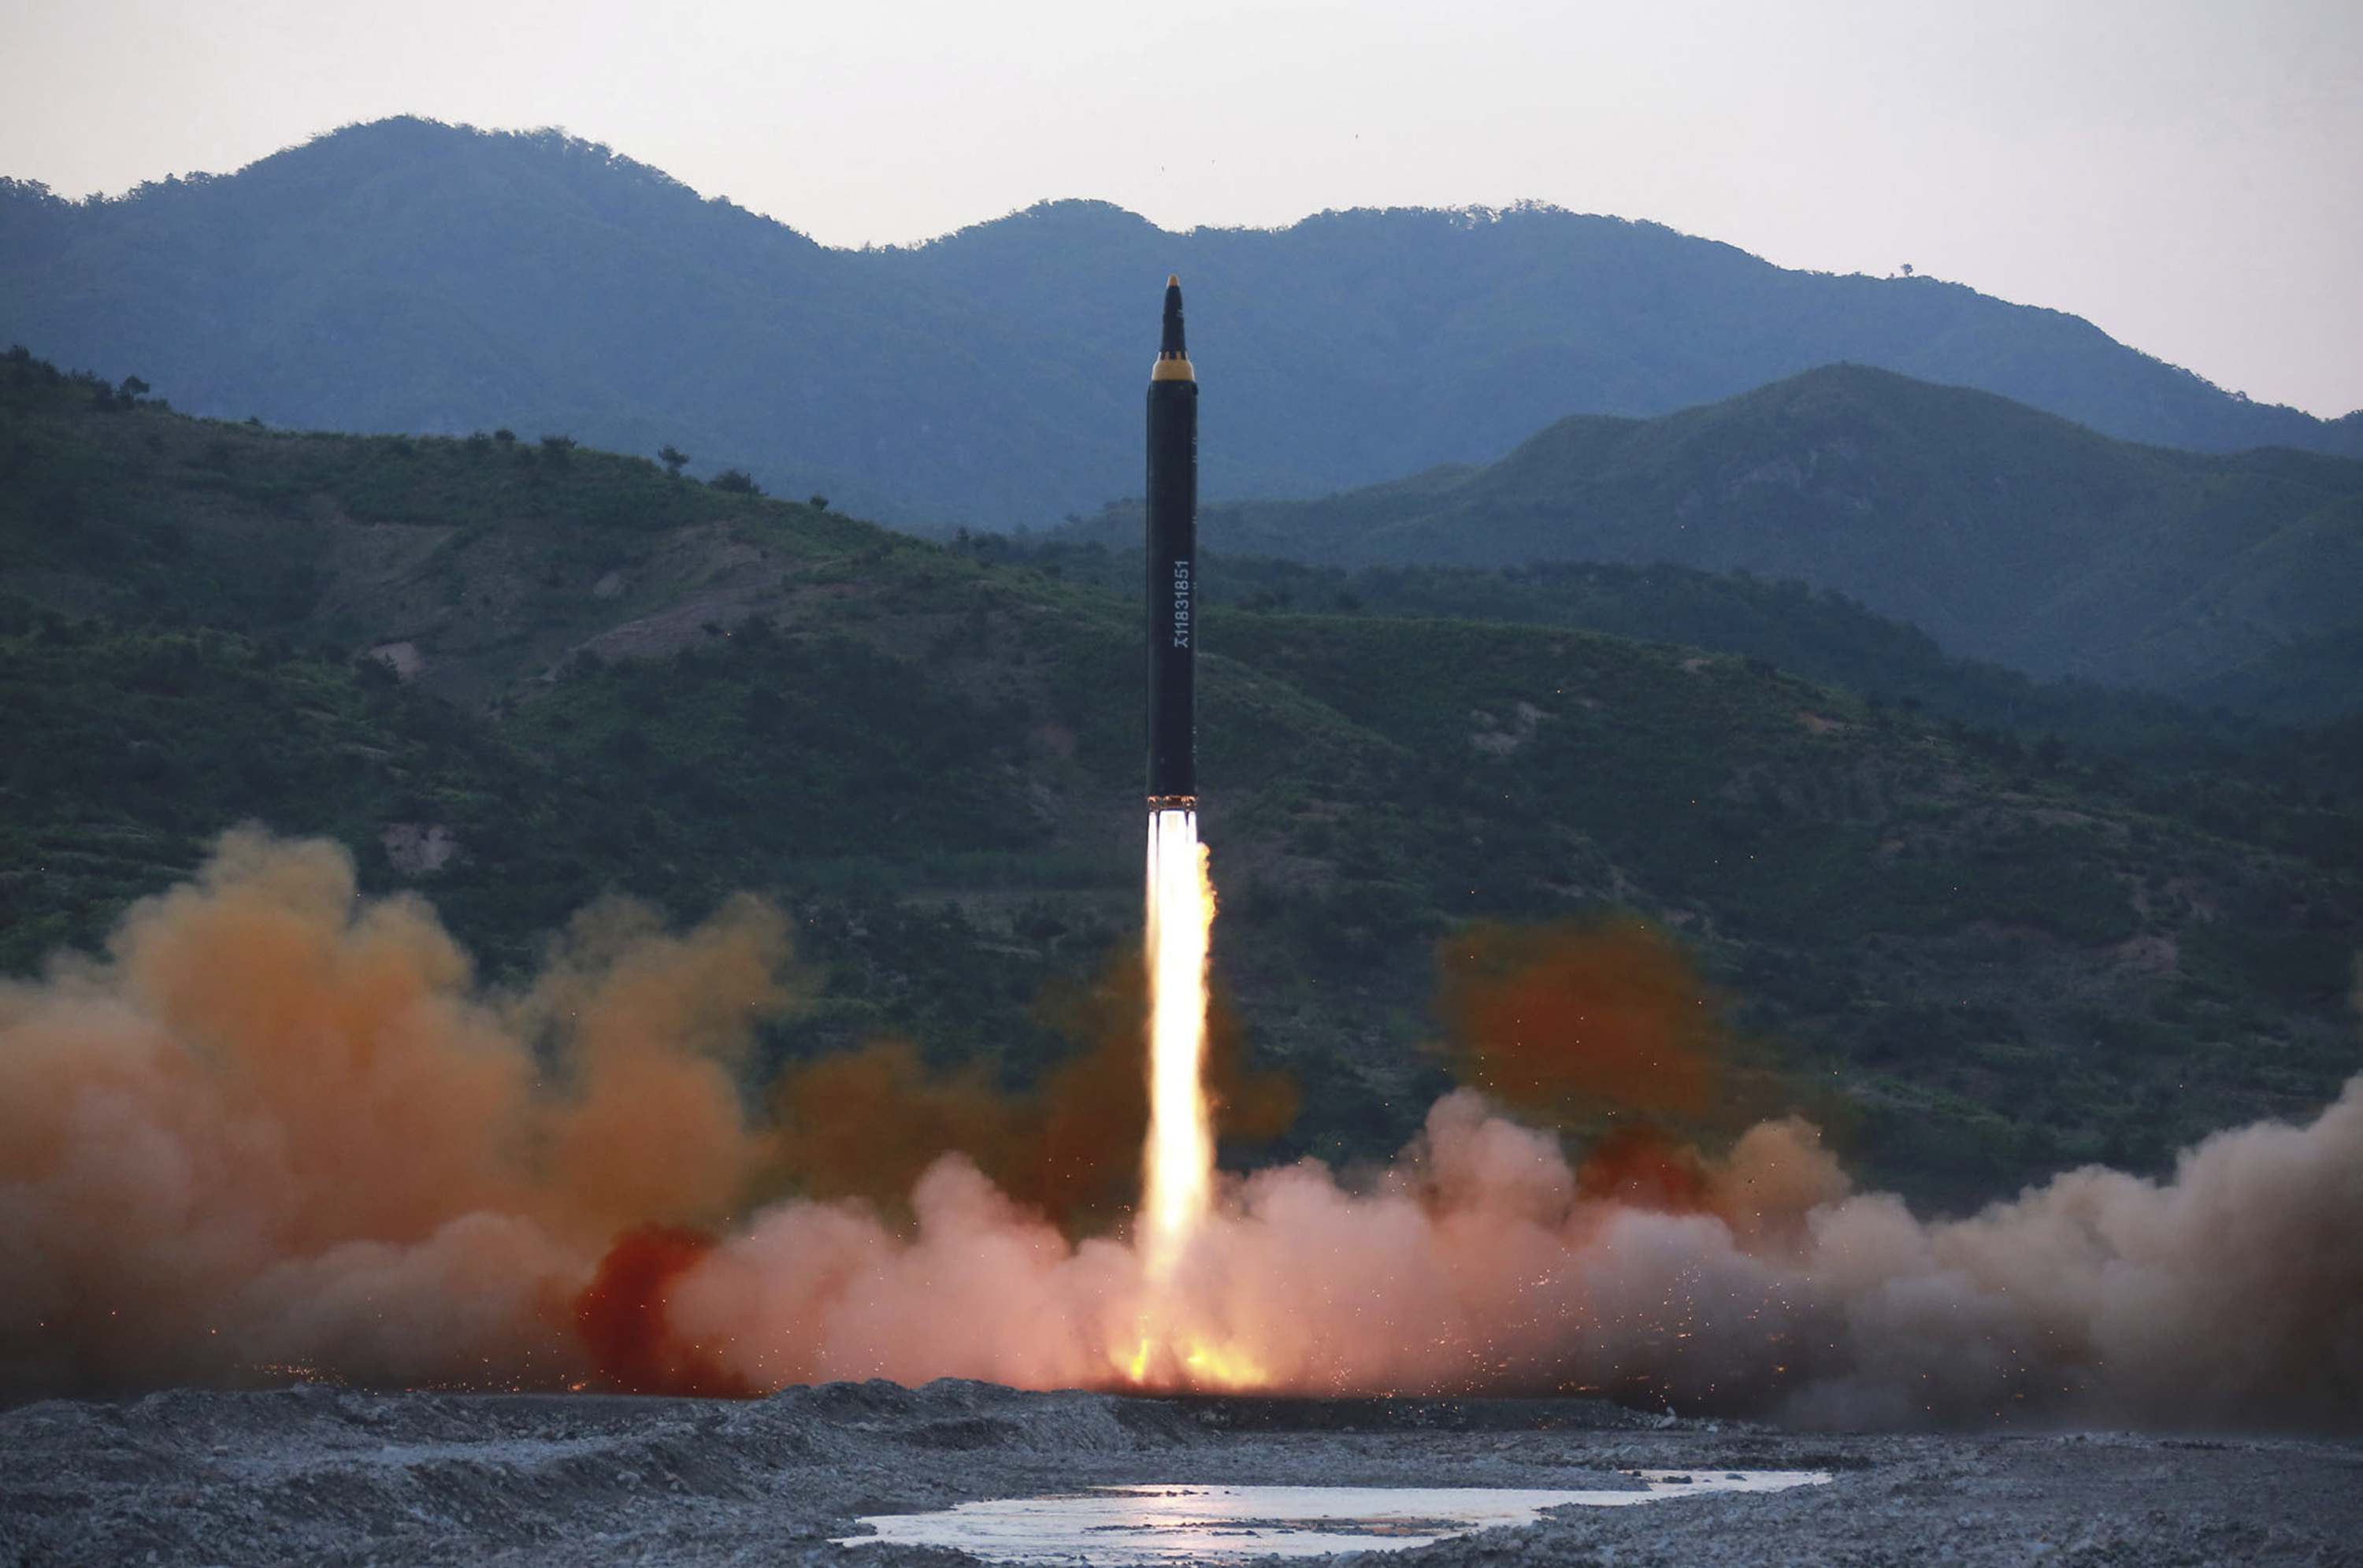 Северна Корея направи поредица ракетни изпитания в последно време